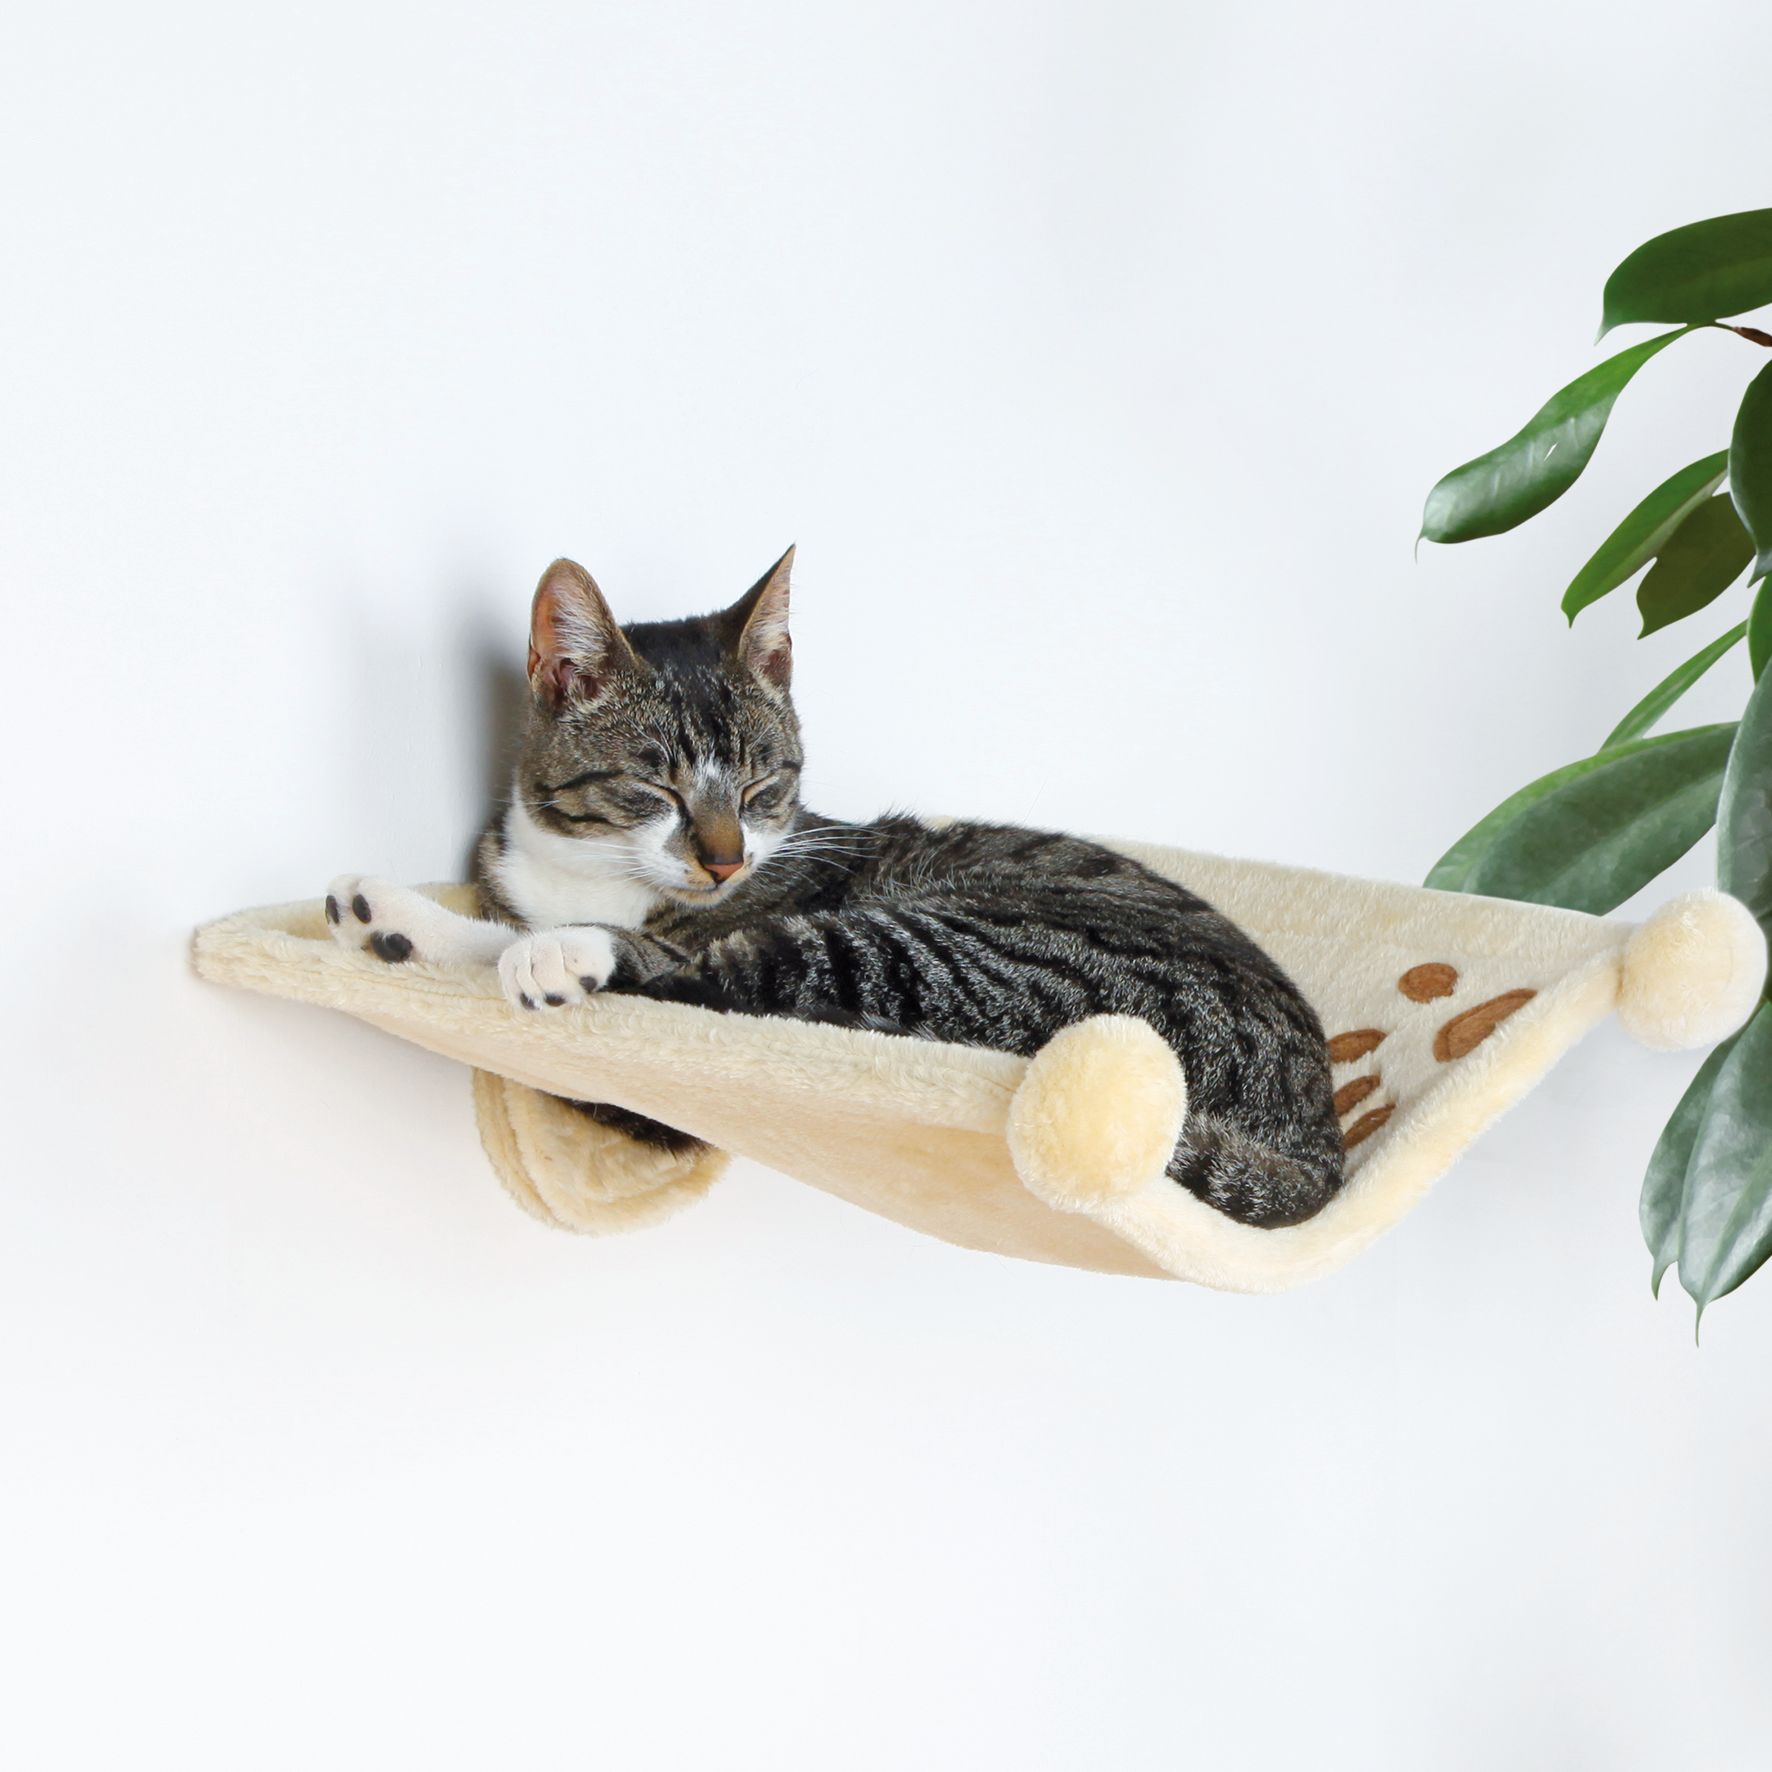 Лежак с креплением на стену для кошки заказать онлайн, опт и розница.  TRIXIE — официальный поставщик в России